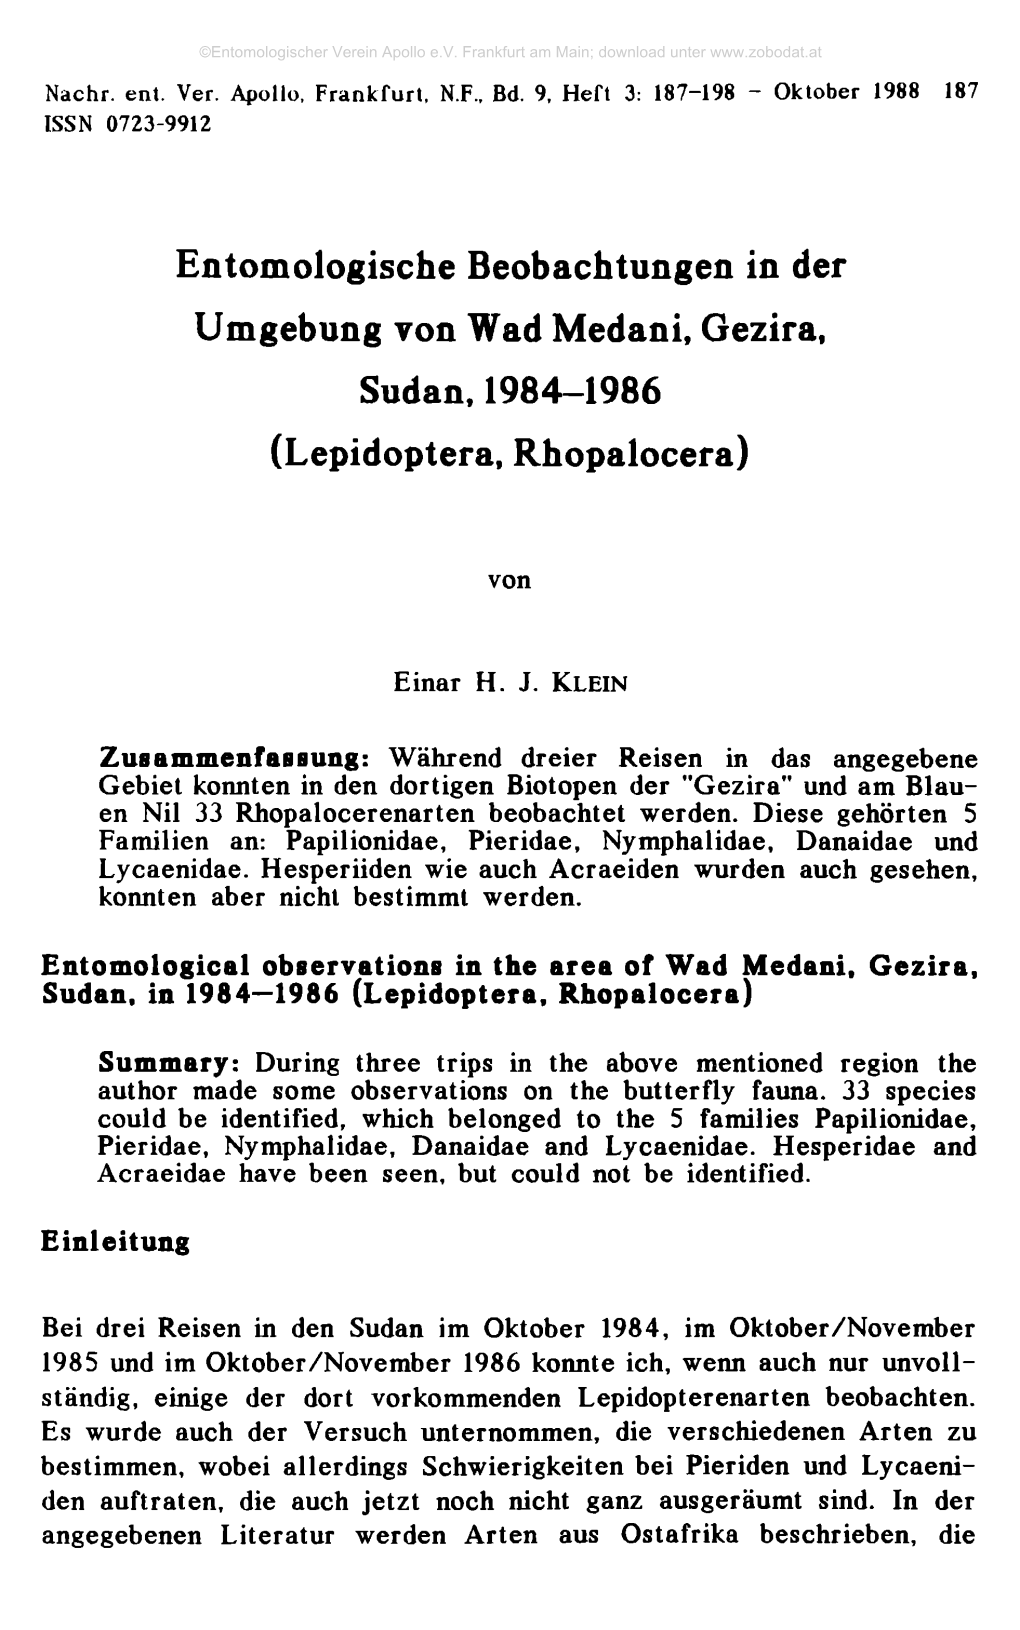 Entomologische Beobachtungen in Der Umgebung Von Wad Medani, Gezira, Sudan, 1984-1986 (Lepidoptera, Rhopalocera)